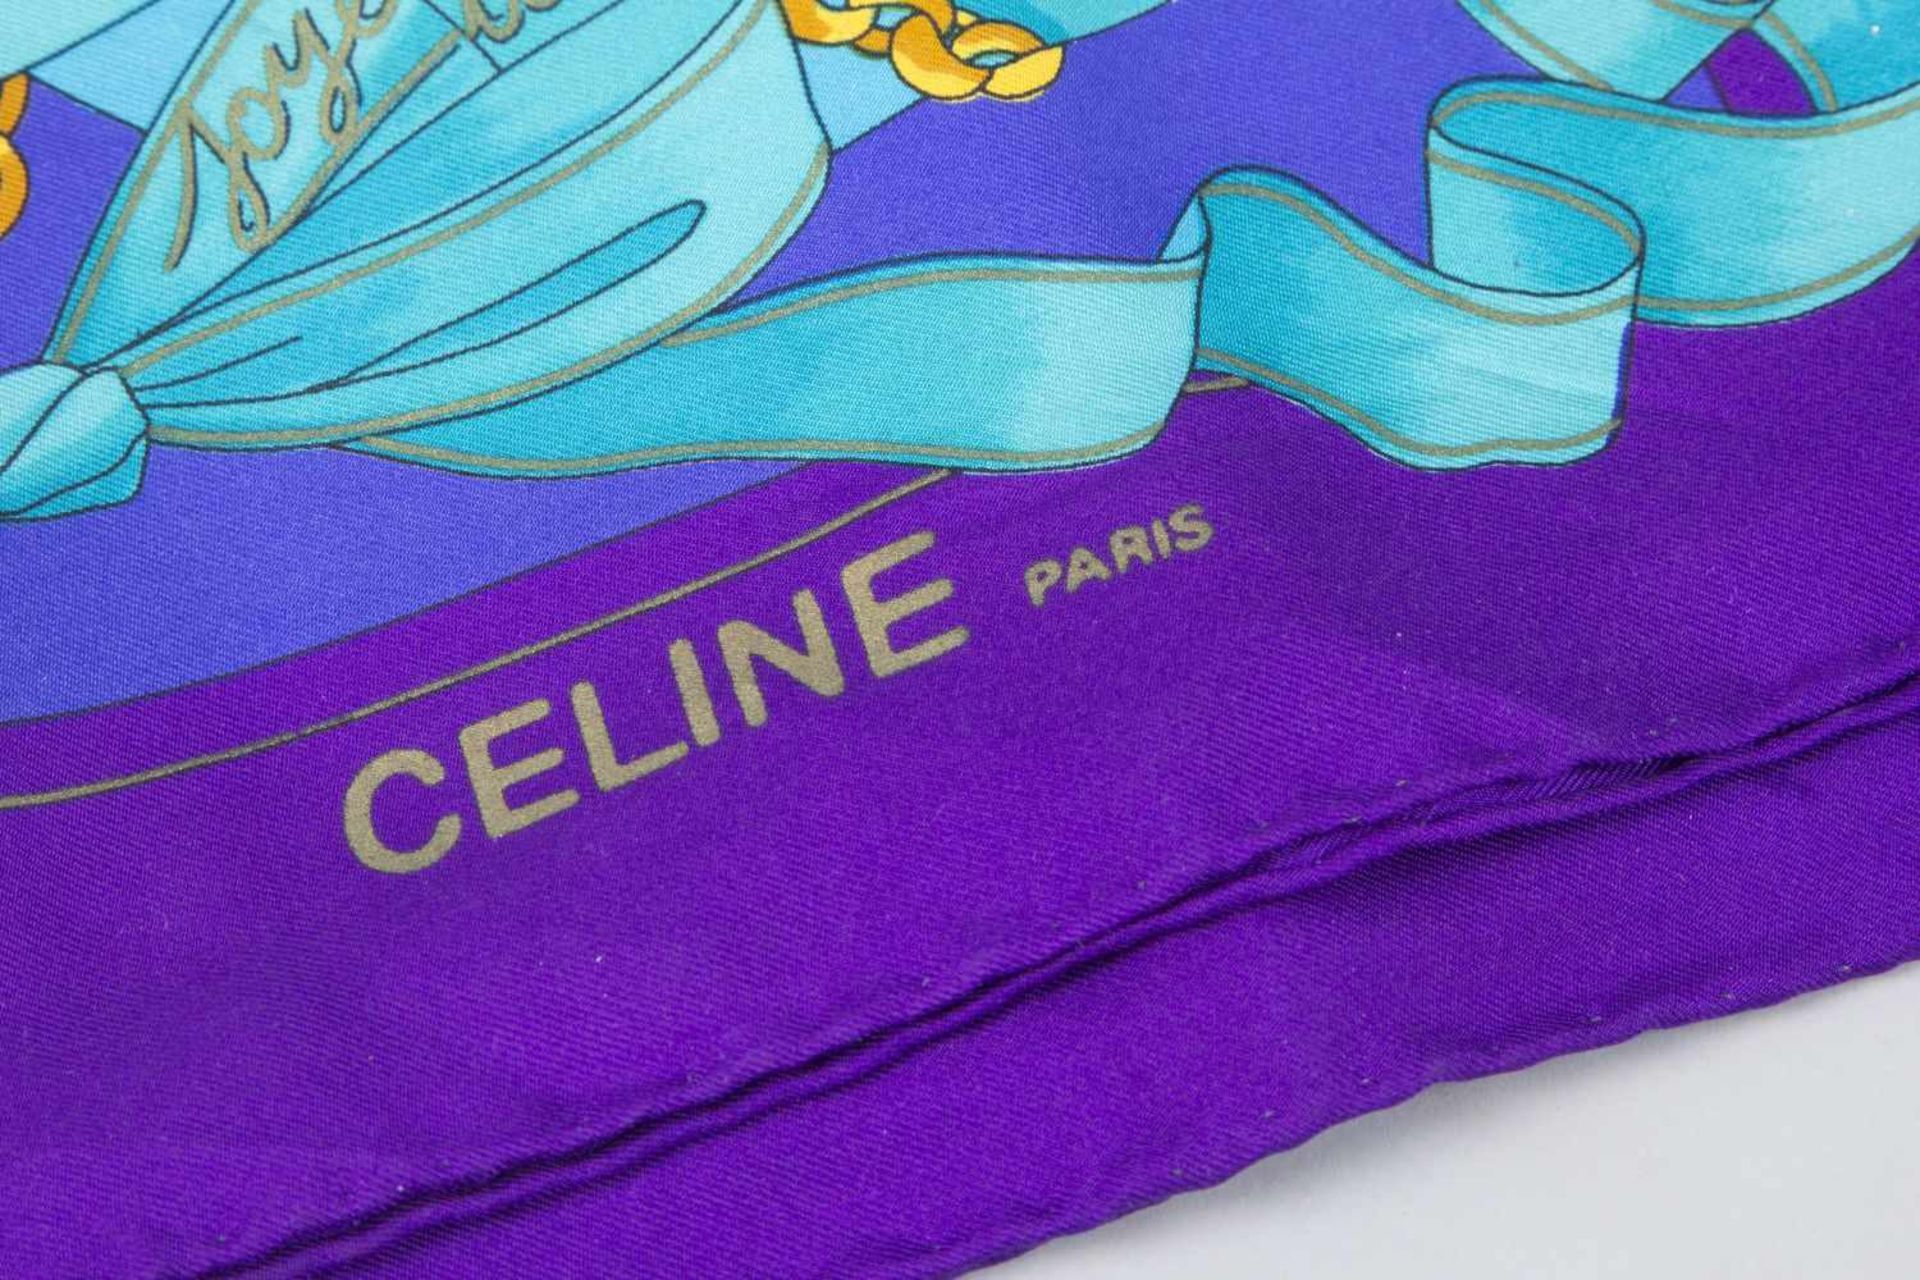 Handtasche von Diane von Fürstenberg und Celine-SeidentuchGrünes Nappaleder, seitliche Taschen in - Bild 3 aus 3